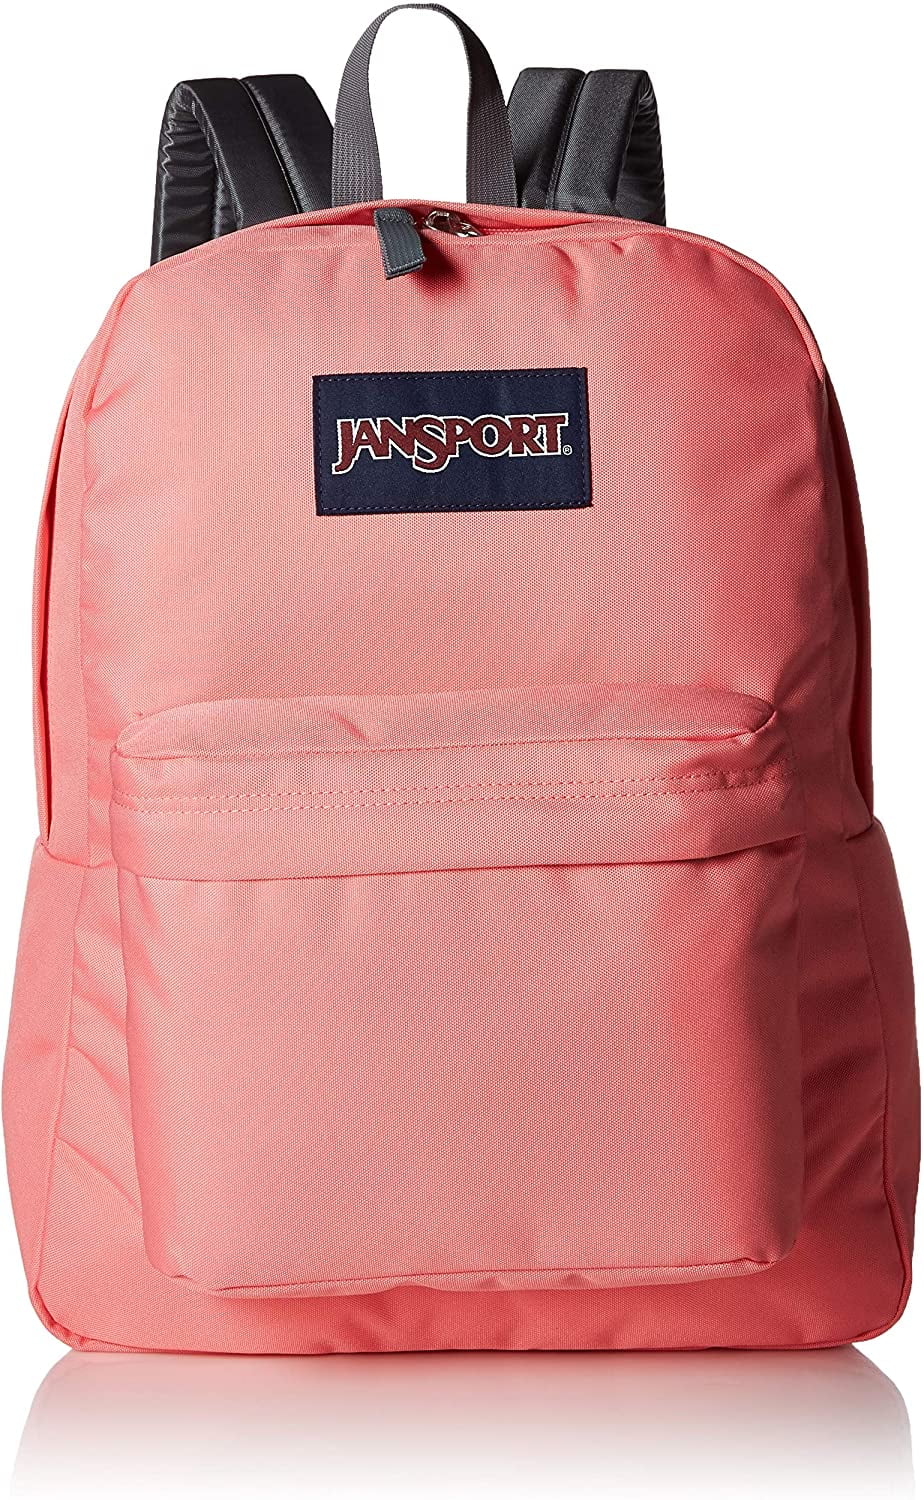 Jansport Superbreak Strawberry Pink Backpack - Walmart.com